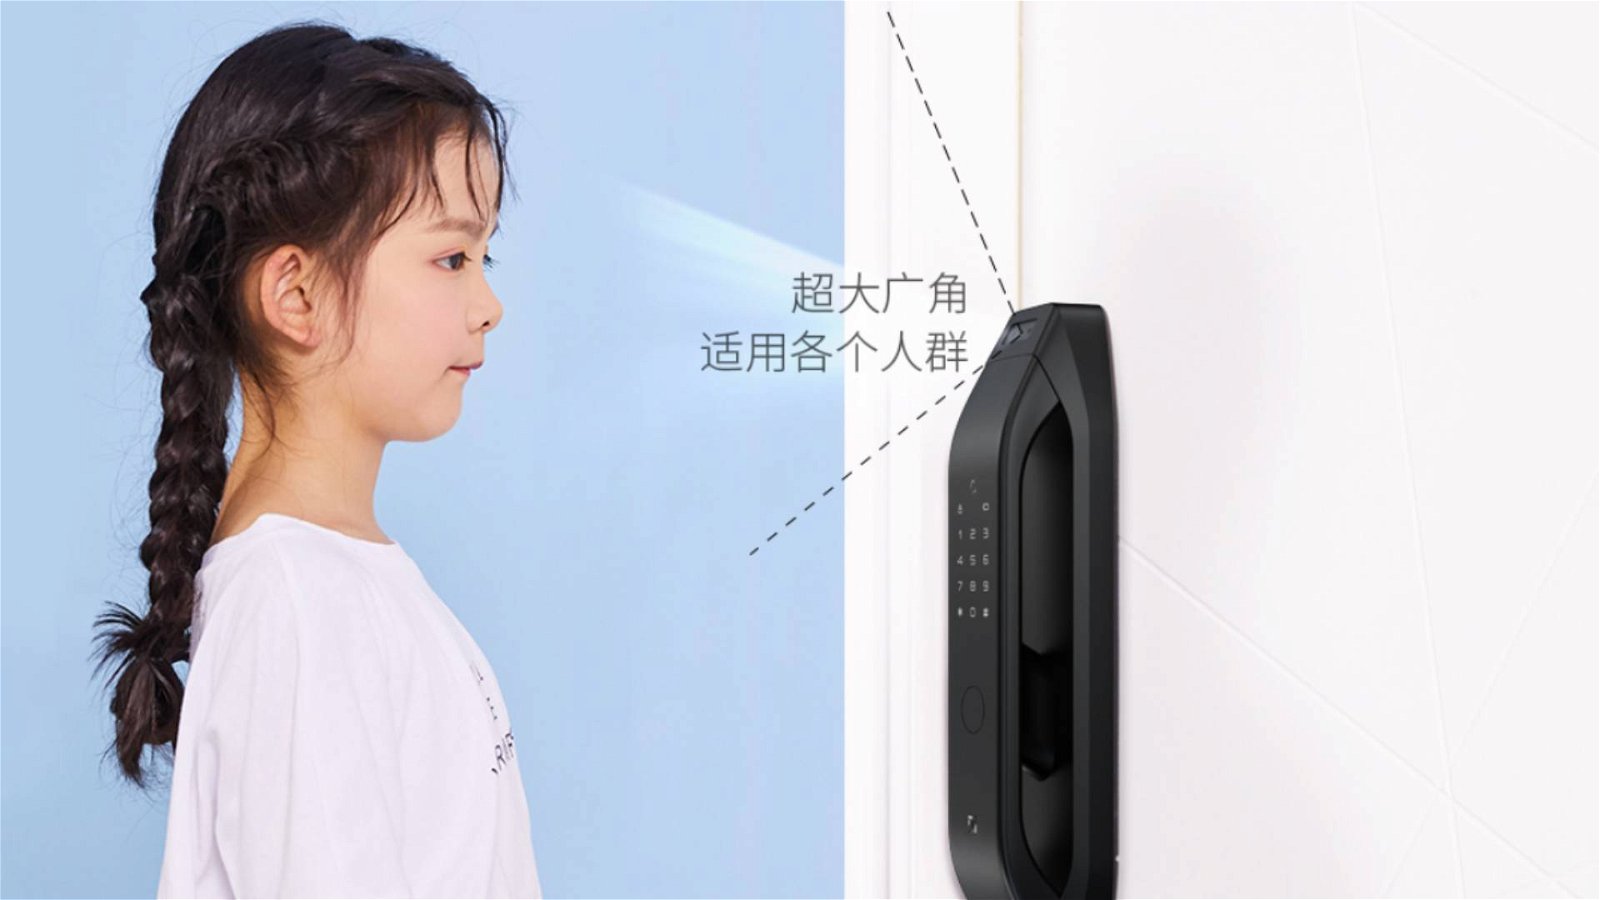 Immagine di Xiaomi: ecco la serratura smart con riconoscimento facciale 3D